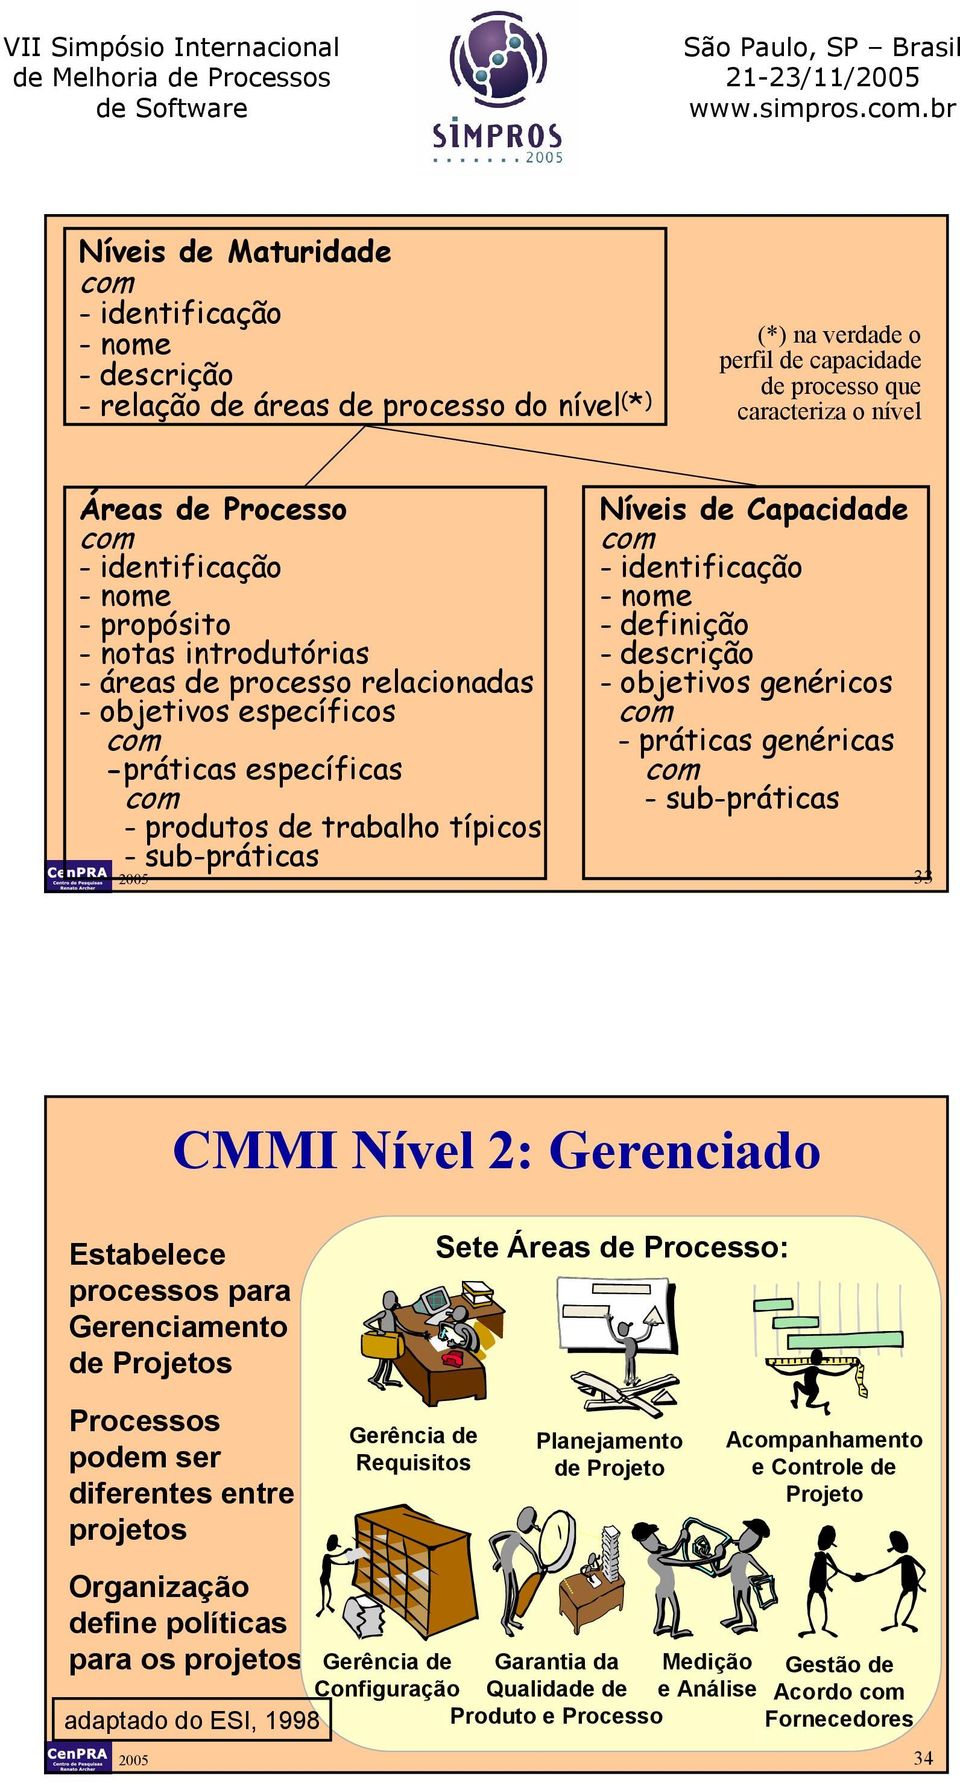 - identificação -nome - definição -descrição -objetivos genéricos - práticas genéricas - sub-práticas 2005 33 CMMI Nível 2: Gerenciado Estabelece processos para Gerenciamento de Projetos Sete Áreas